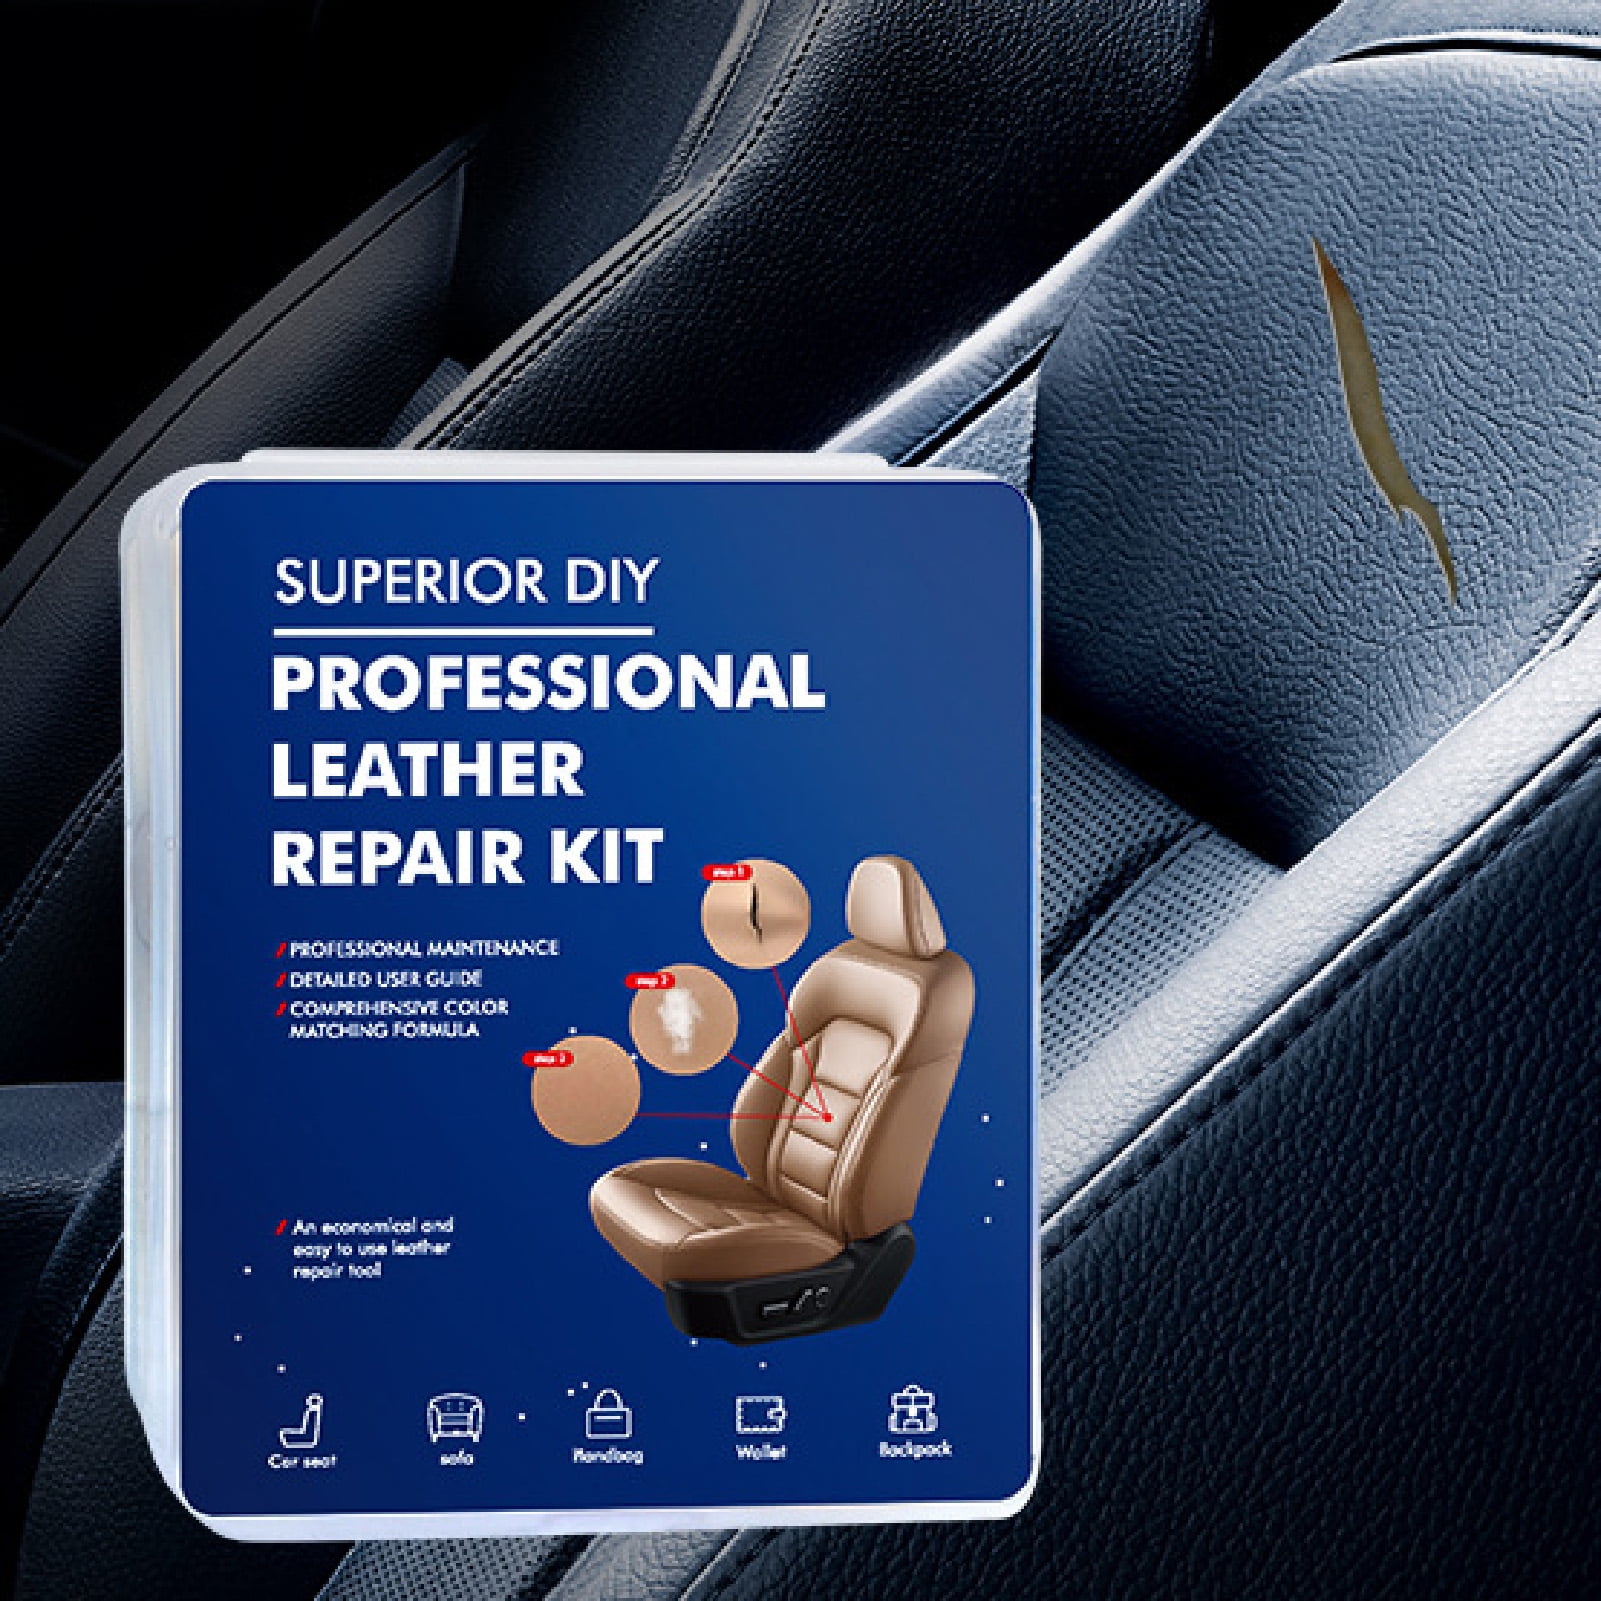 Fairnull 1 Set Leather Repair Kit Long Lasting Safe Plastic Seat Fix  Adhesive Restorer for Car Seat 